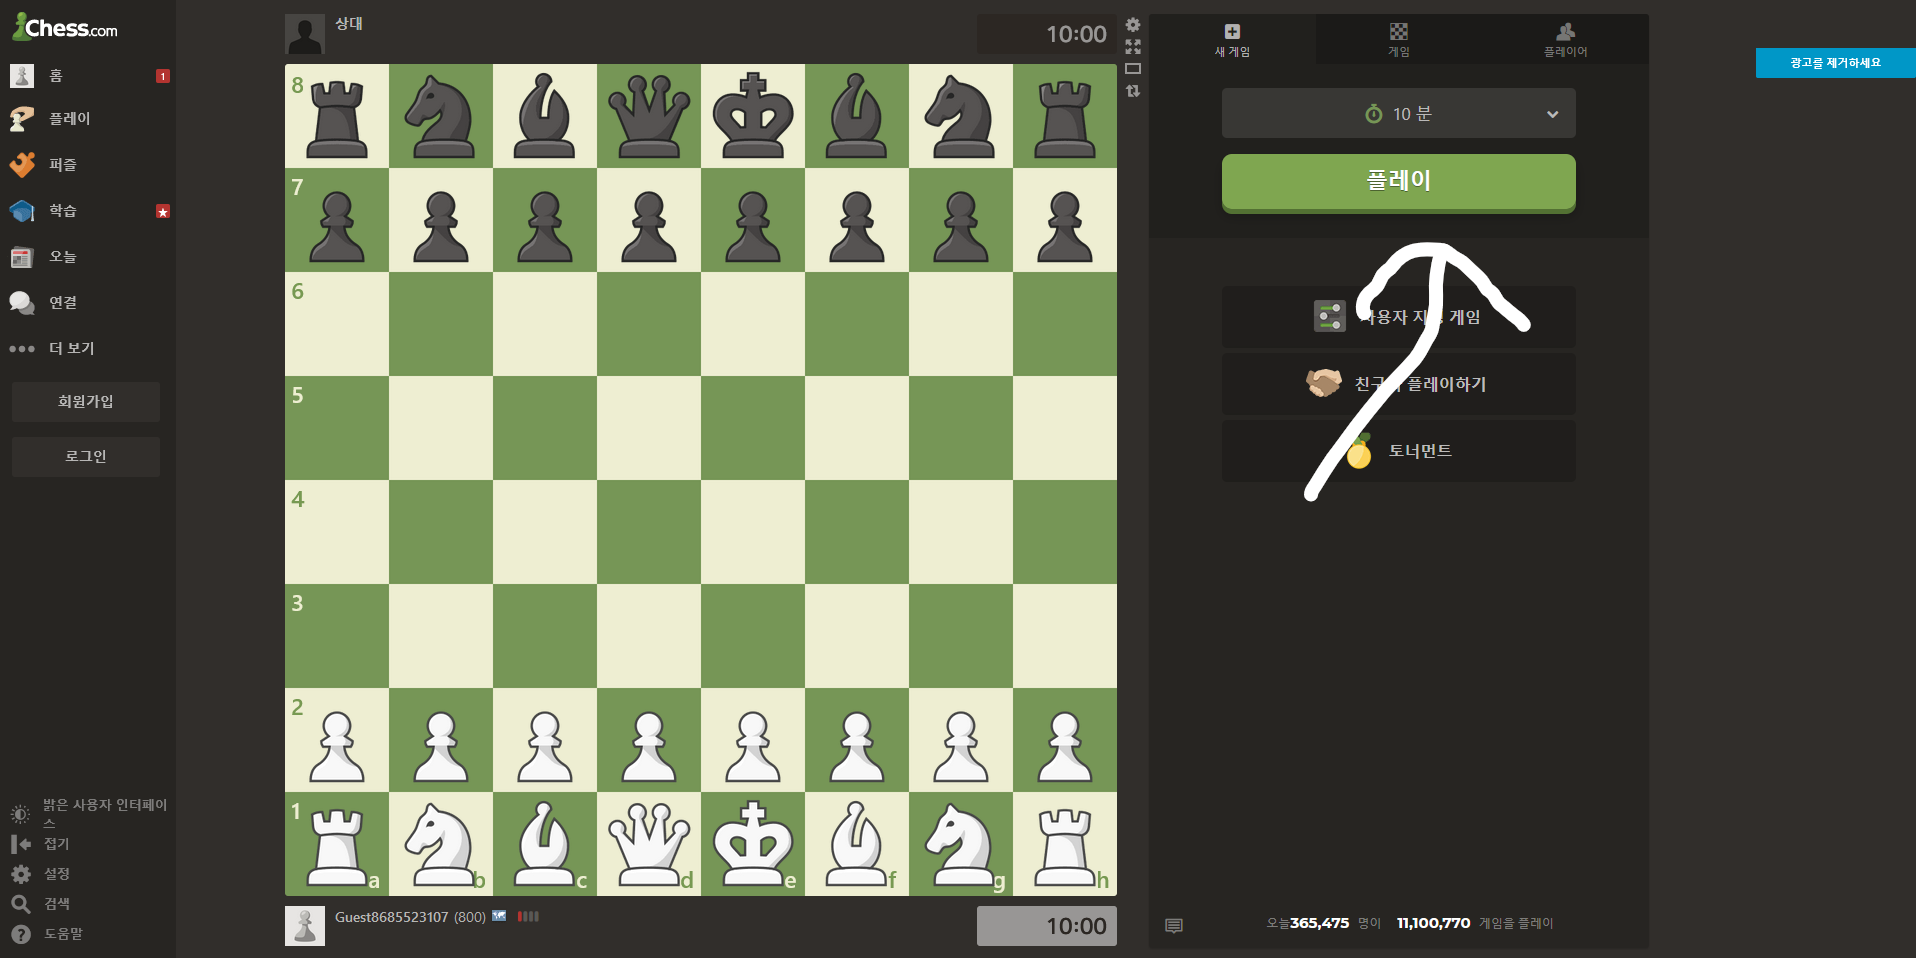 chess.com 사용법 5